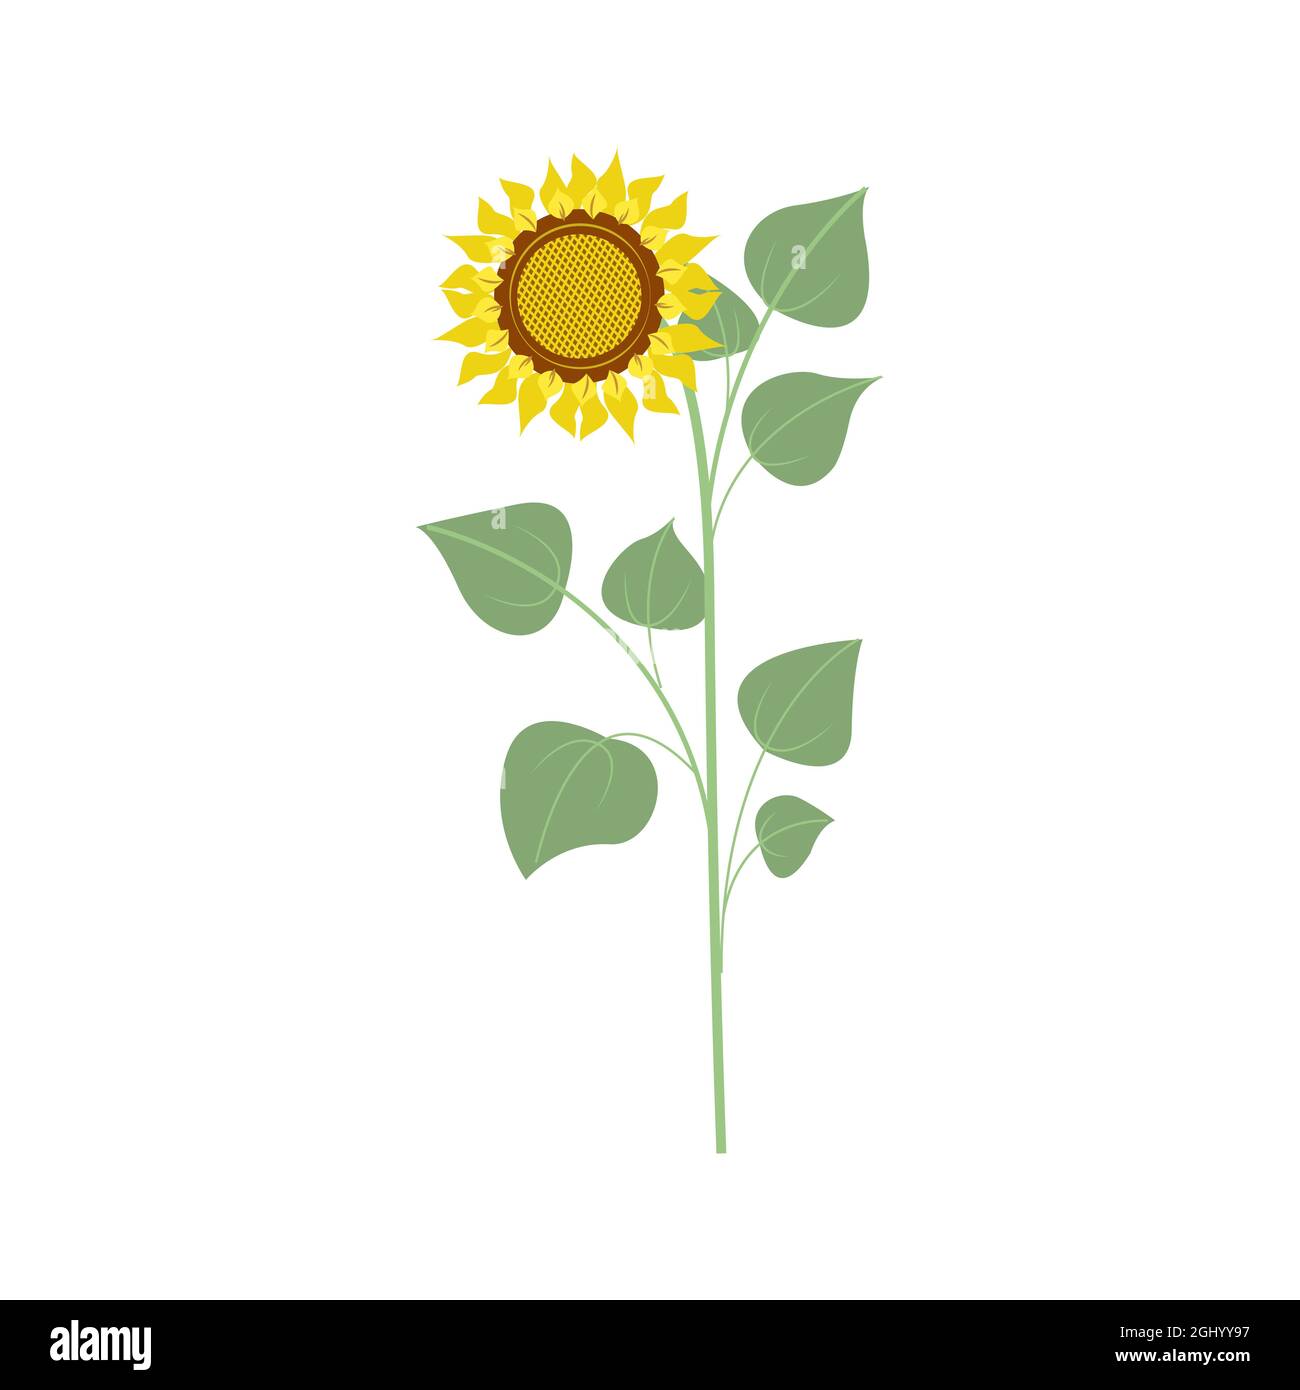 Grosse fleur de tournesol, récolte d'automne. Illustration de style plat, isolée Illustration de Vecteur